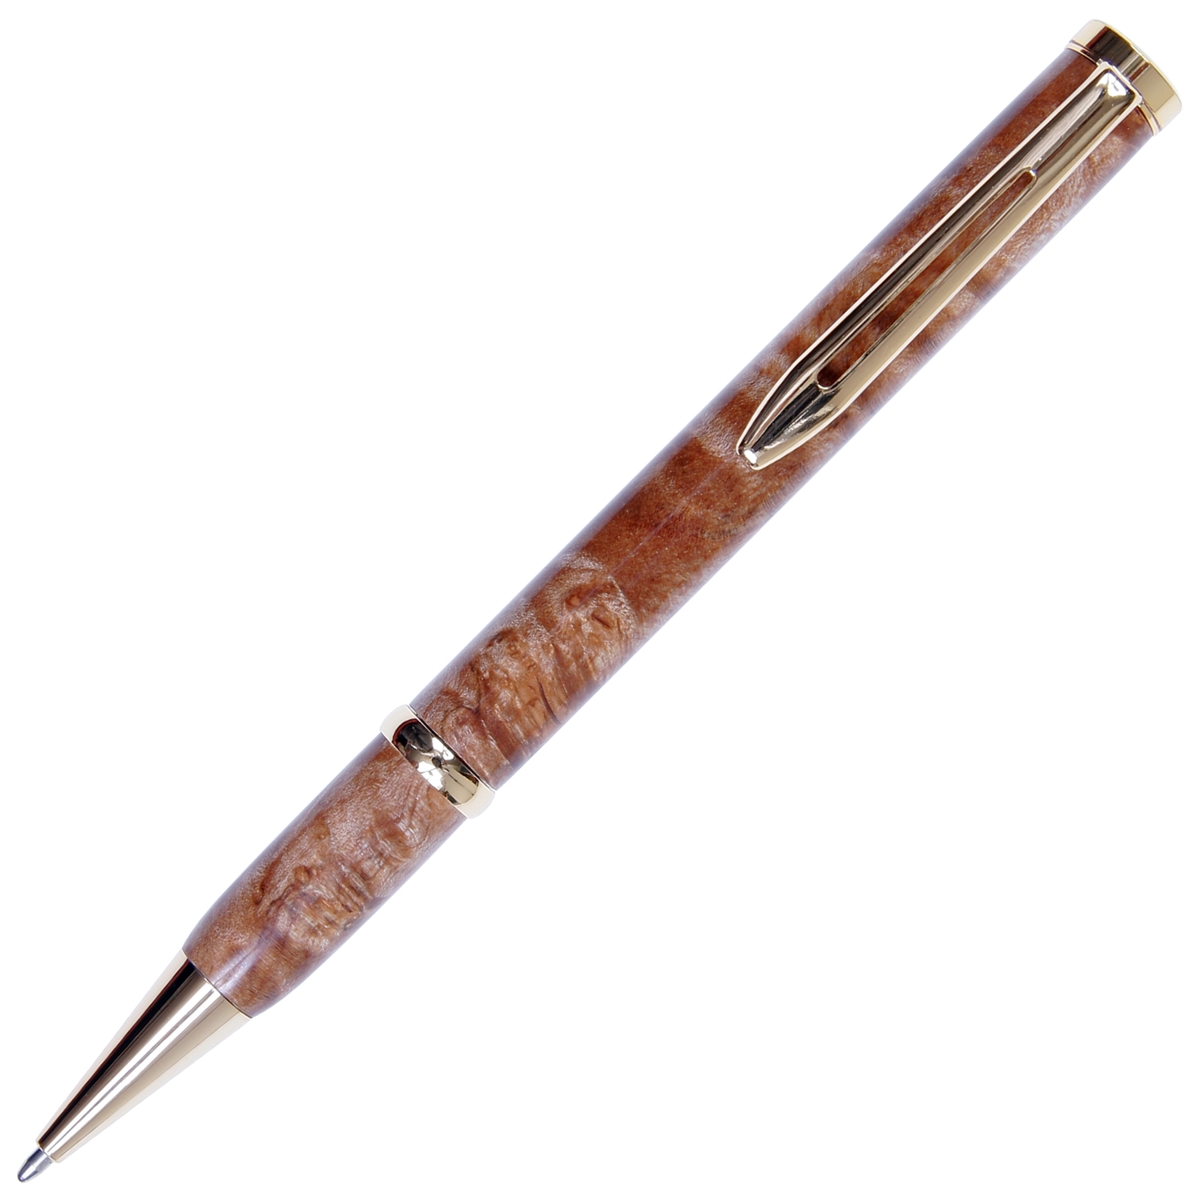 Longwood Twist Pen - Maple Burl